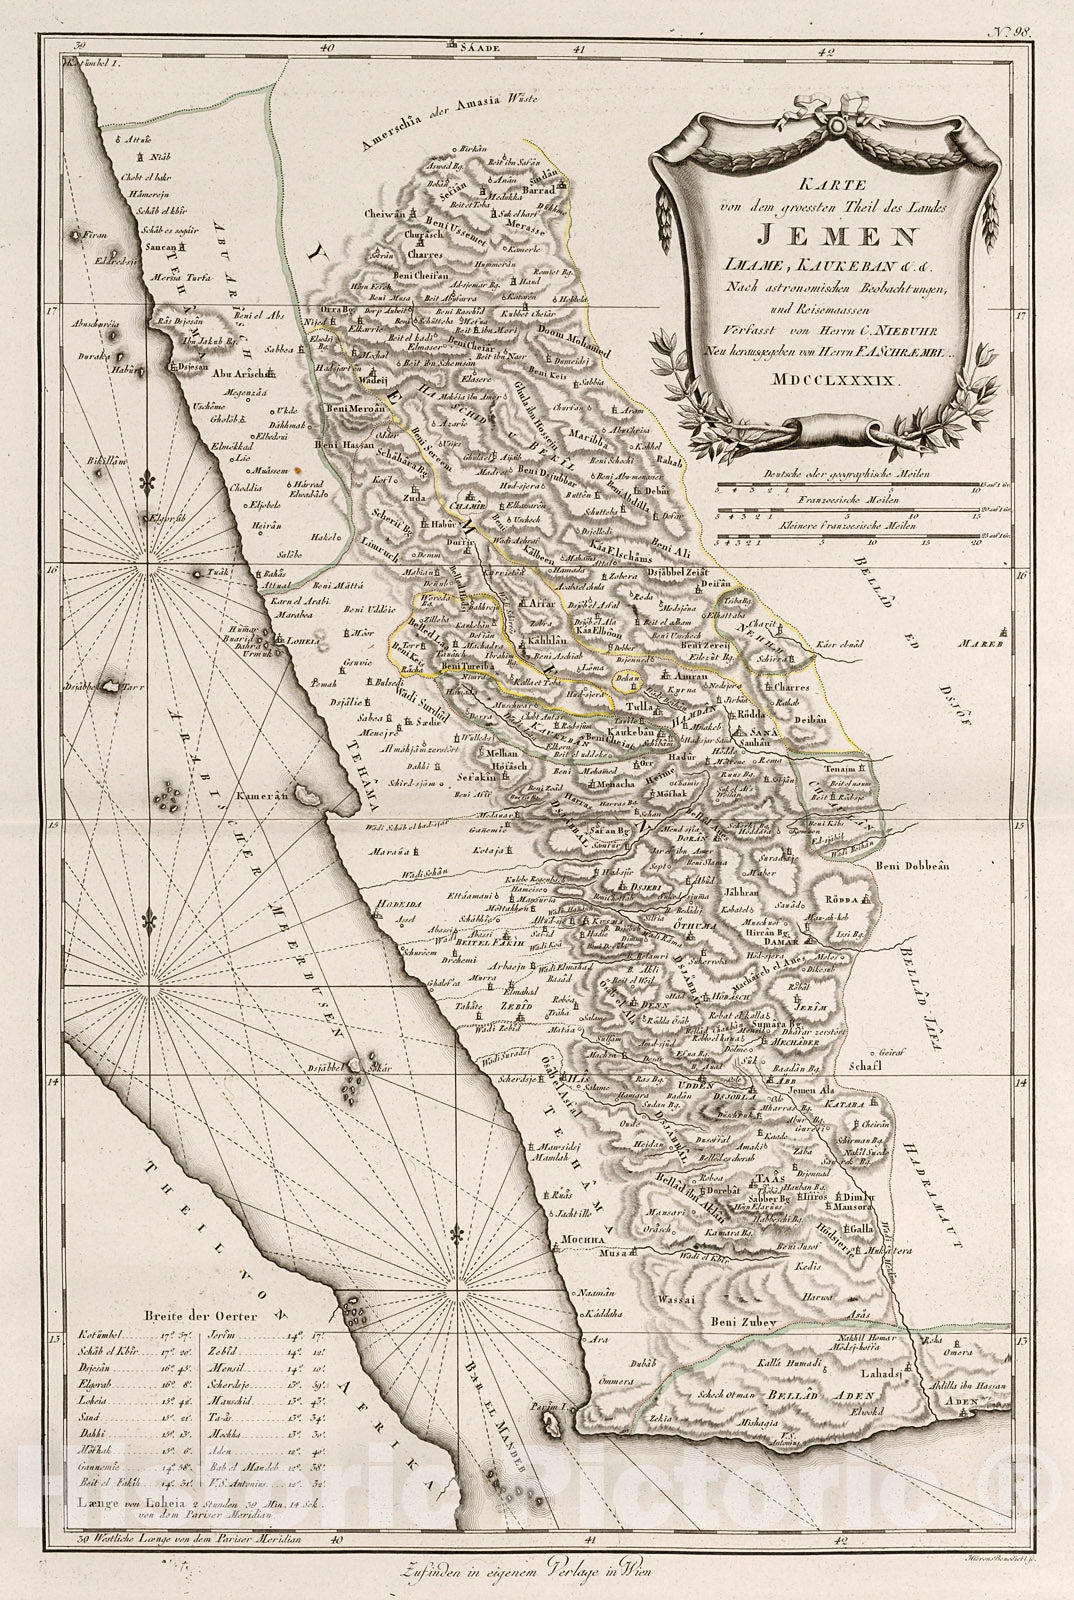 Historic Map : Karte von dem groessten Theil des Landes Jemen, Lmame, Kaukeban., 1800, Vintage Wall Decor